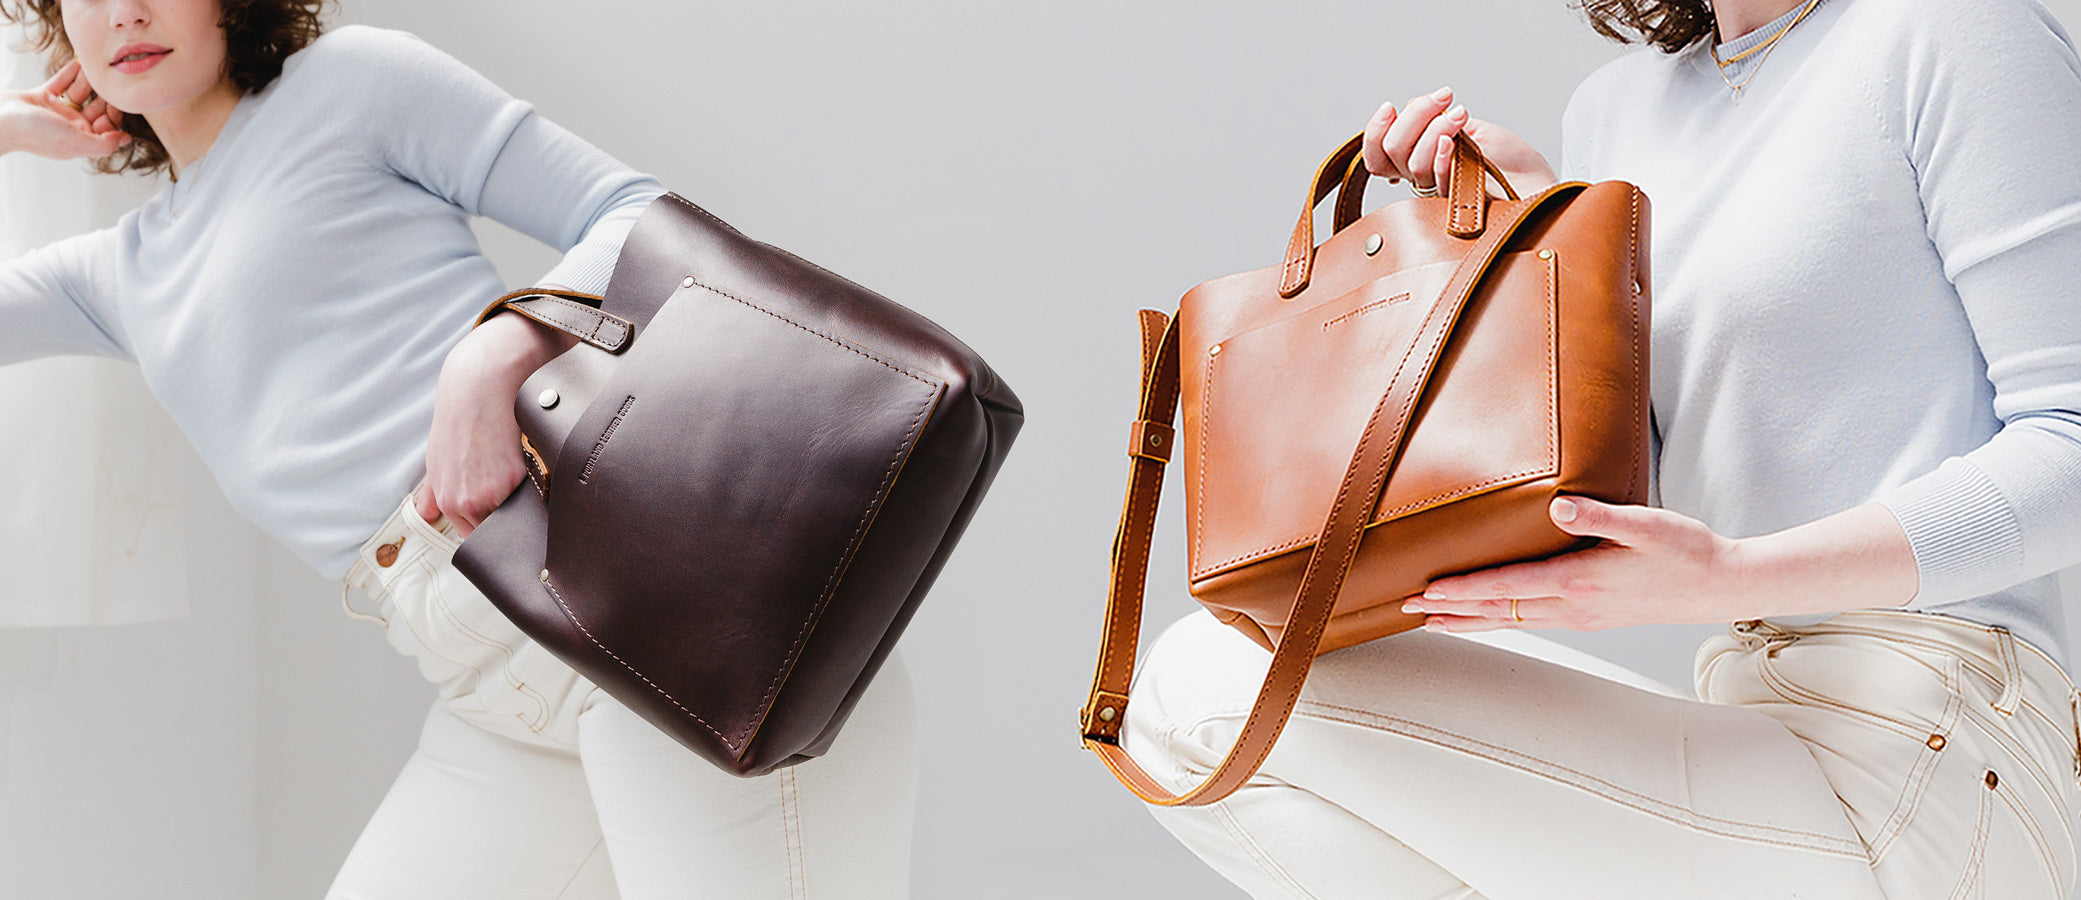 Patricia Nash Shoulder bag purse brown leather Vintage bag tote multi  pocket | eBay